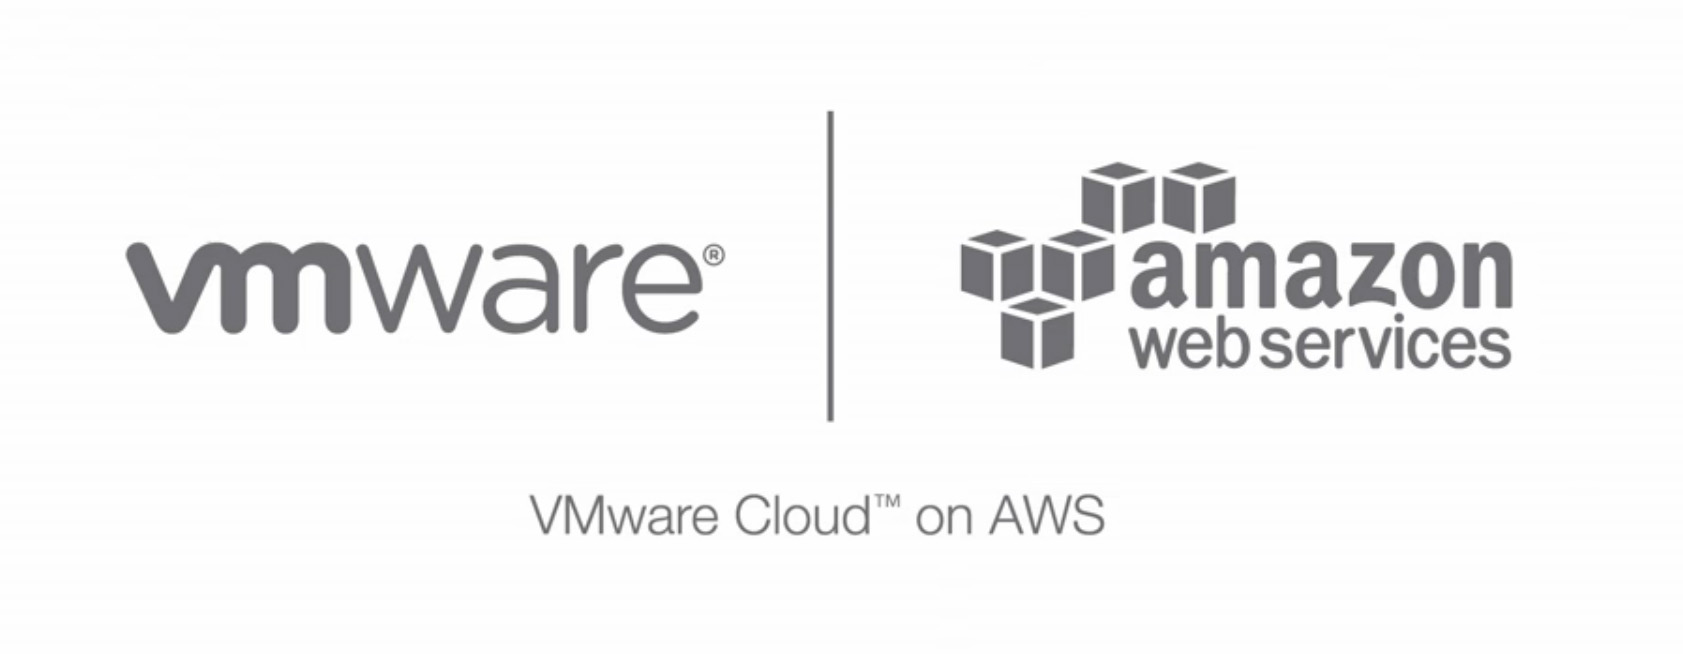 Vmware und Amazon Web Services bauen Zusammenarbeit aus